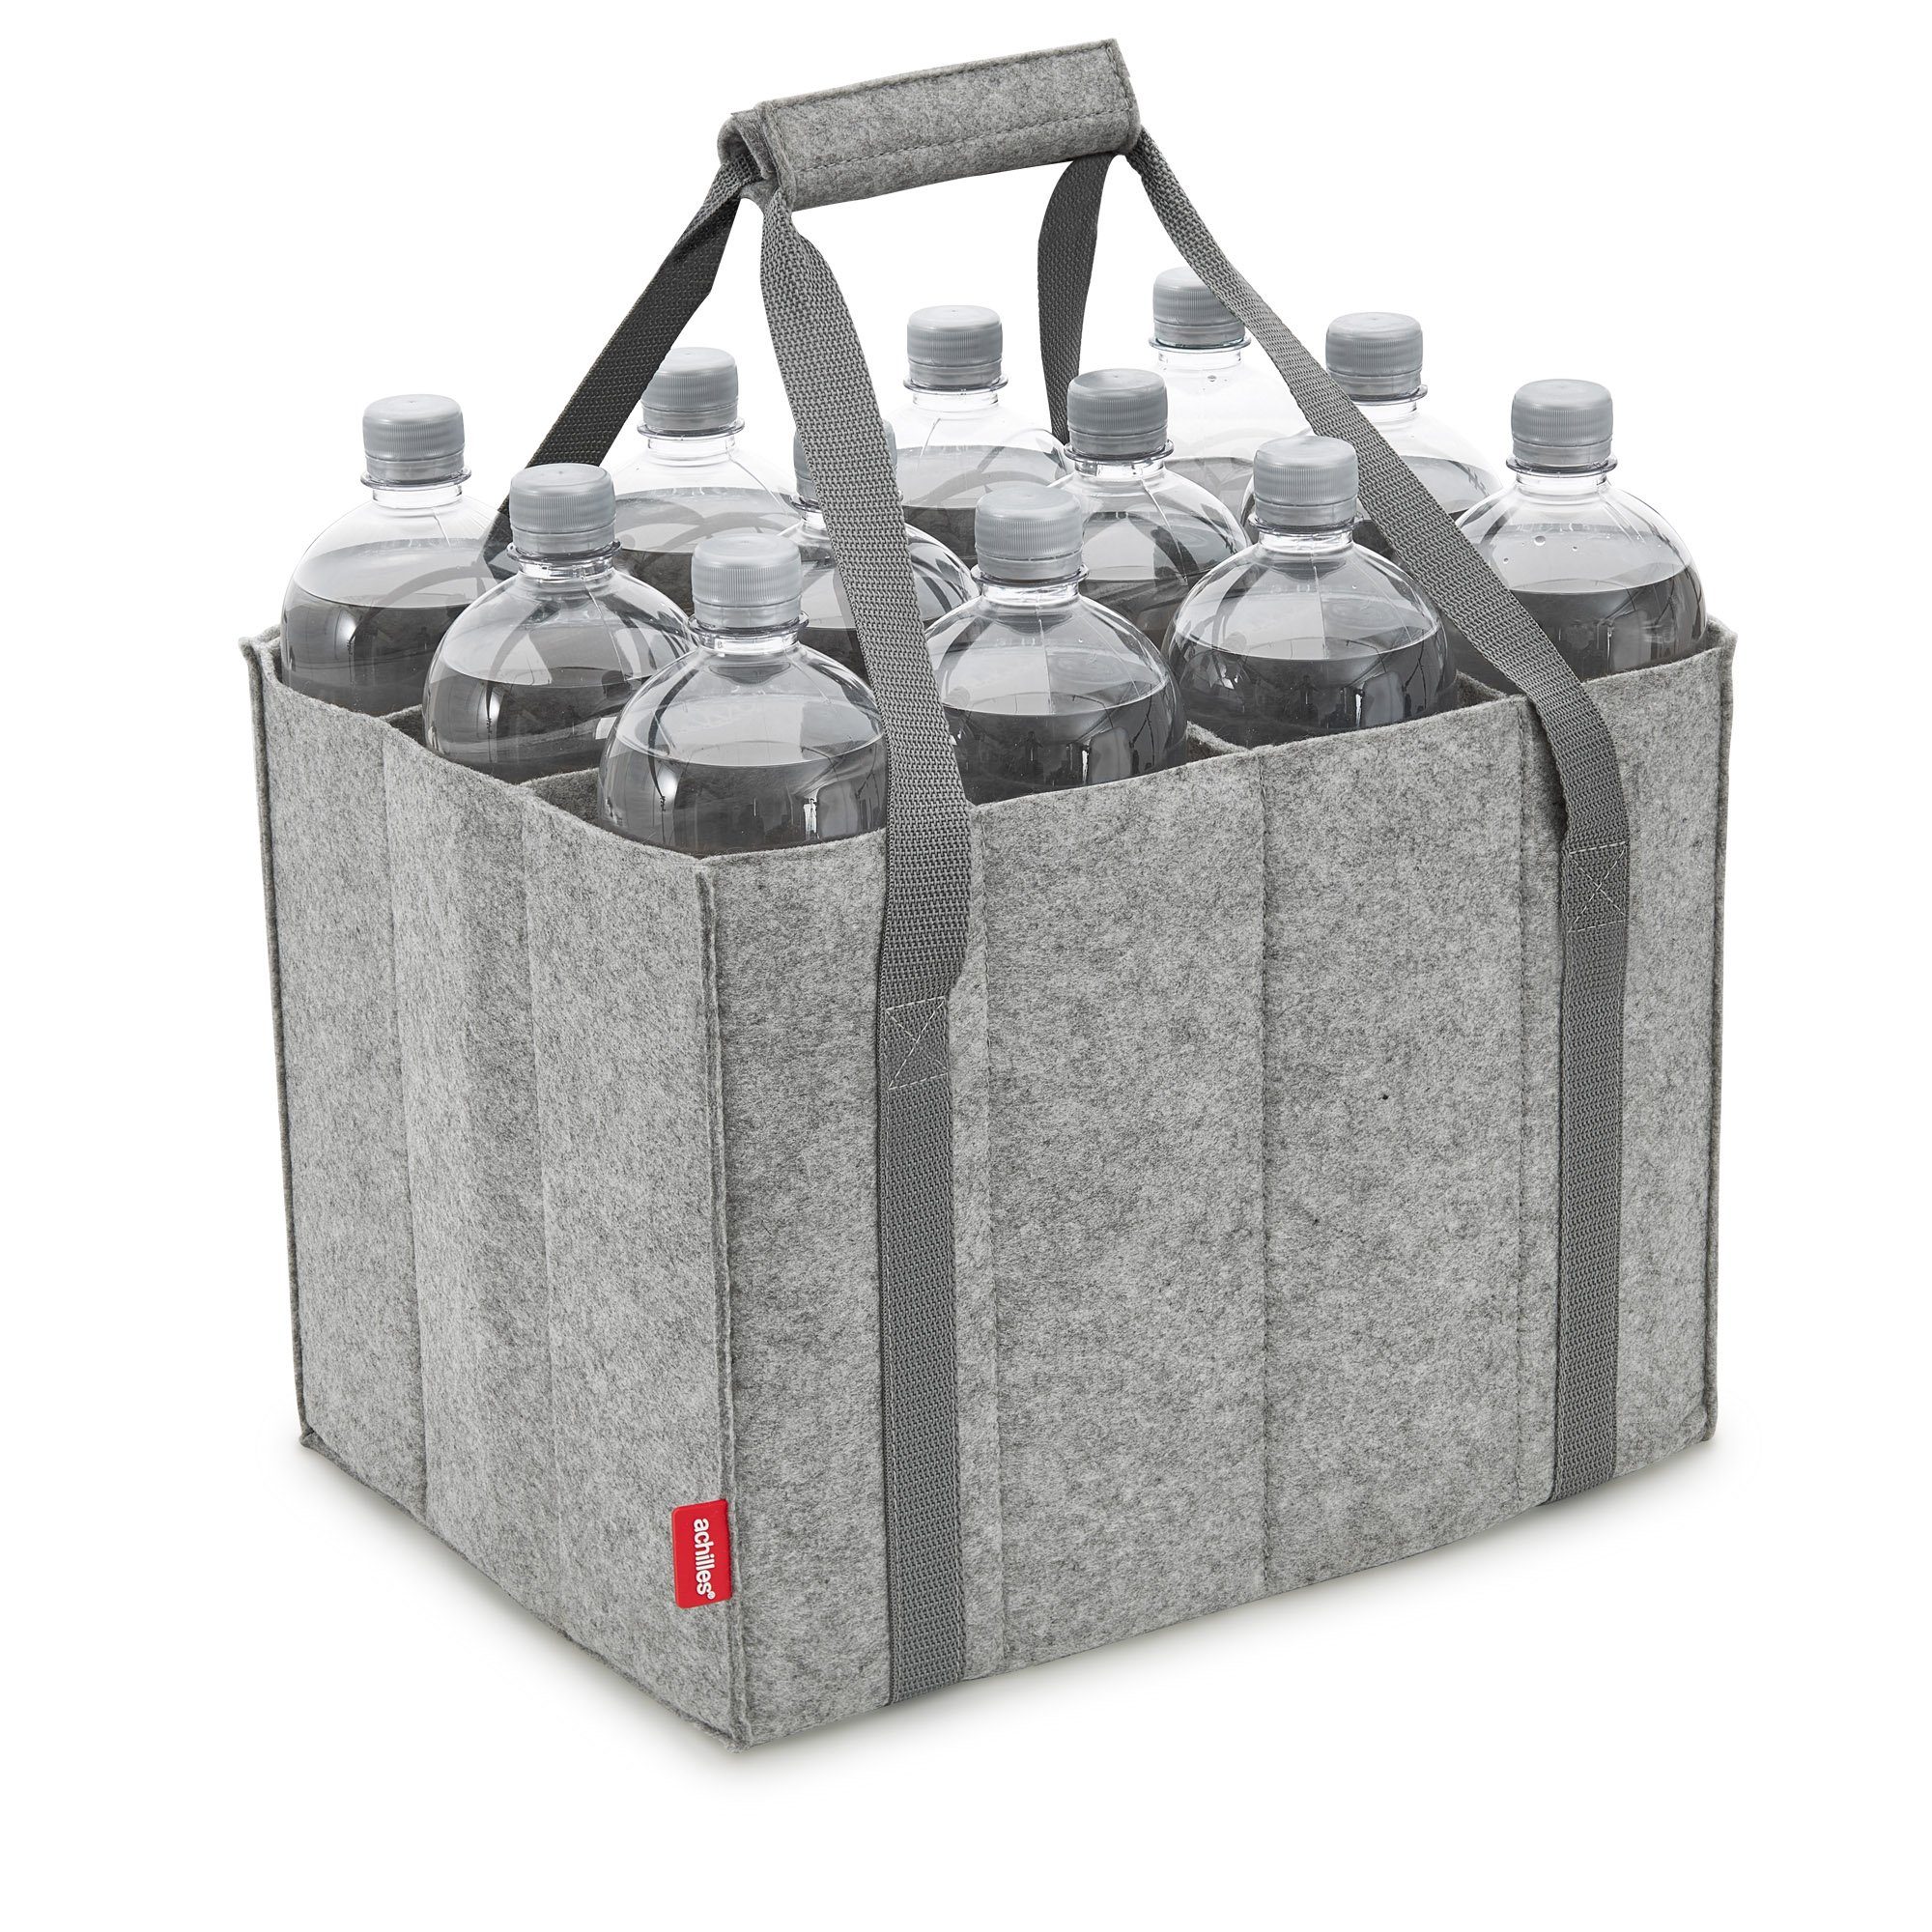 cm x 100% Liter Tasche Flaschen Auch x recycelt 1,5 für 27 aus 27 Flaschen, 12 cm mit Fächer, Filz, Flaschenkorb 36 Flaschentasche cm achilles